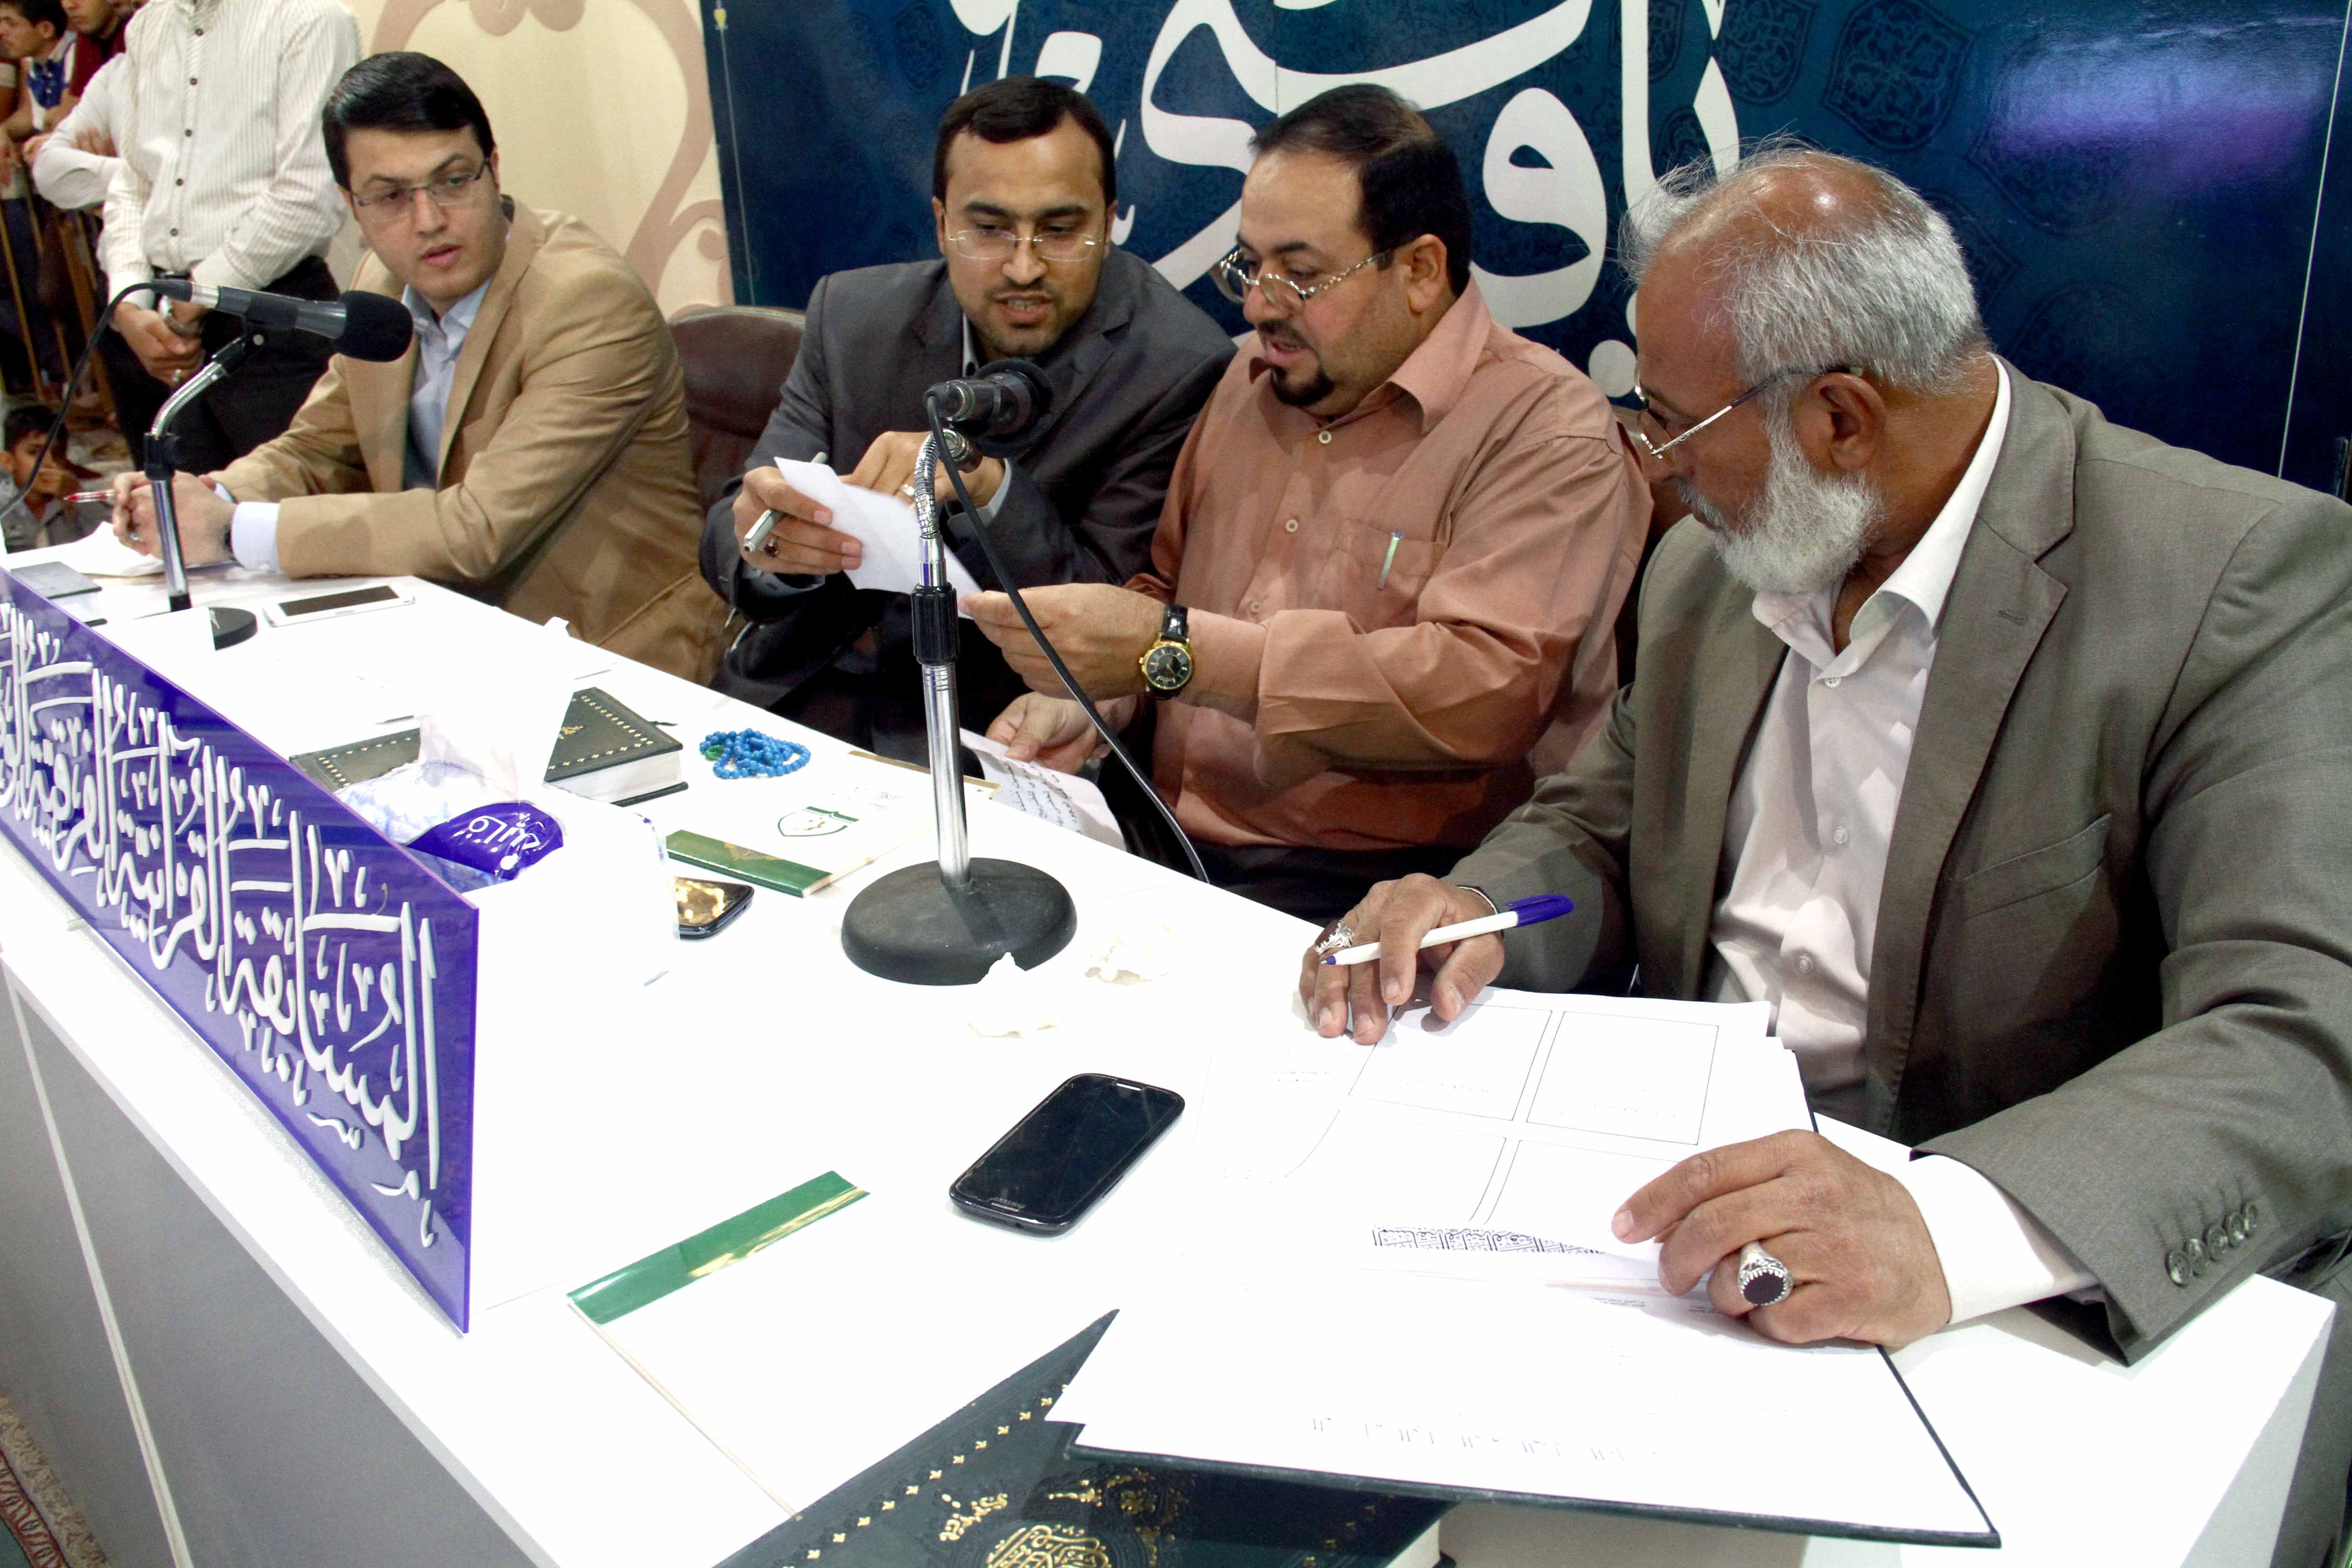 أربعة فرق تتأهل إلى مرحلة ما قبل النهائي في المسابقة القرآنية الفرقية الوطنية الثانية.